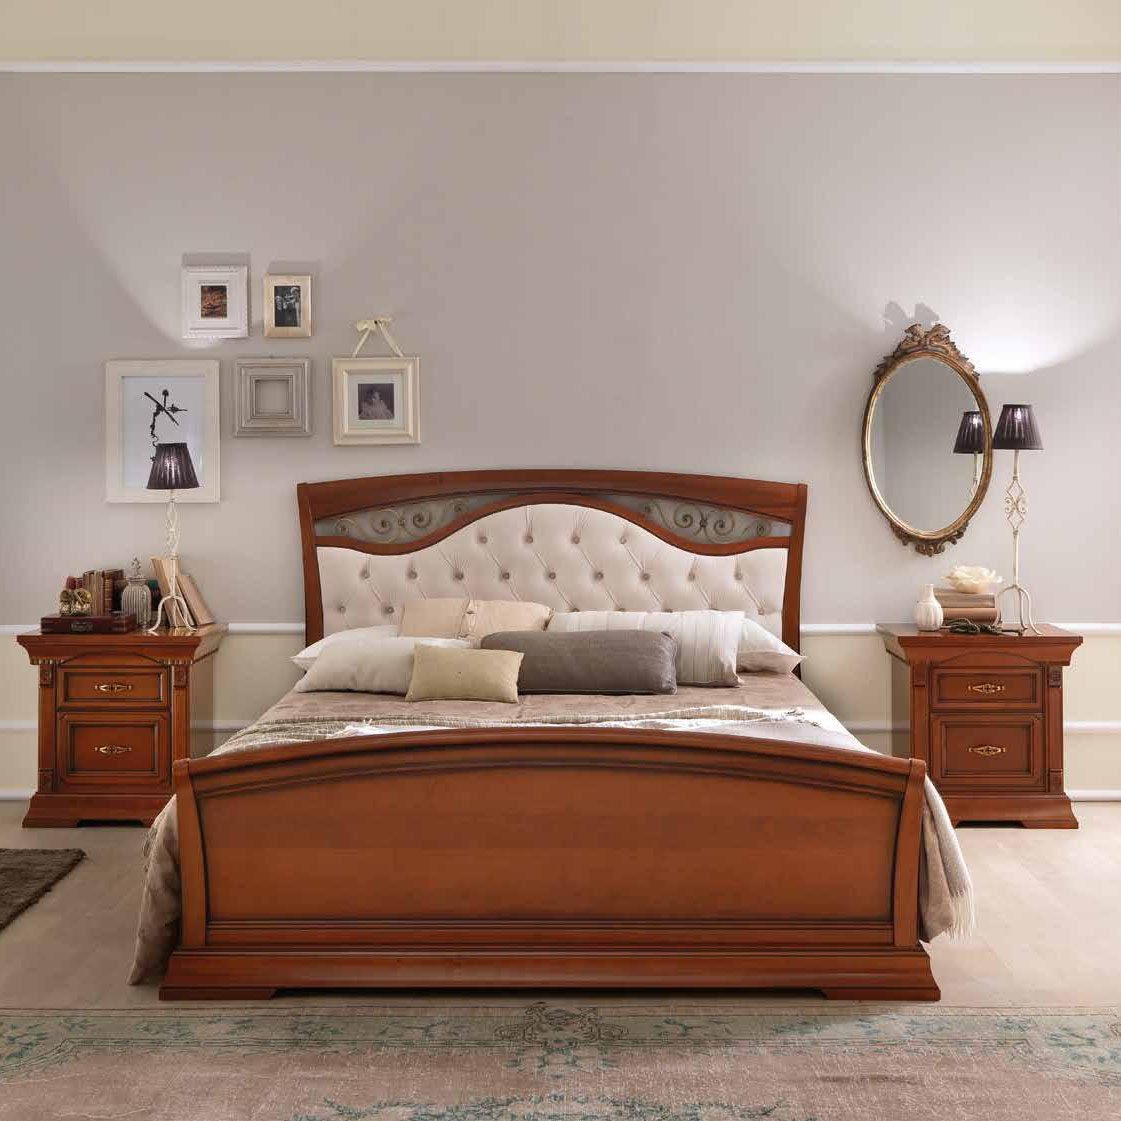 Кровать Prama Palazzo Ducale ciliegio, двуспальная, с мягким изголовьем, с ковкой, цвет: вишня, 160x200 см (71CI64LT)71CI64LT